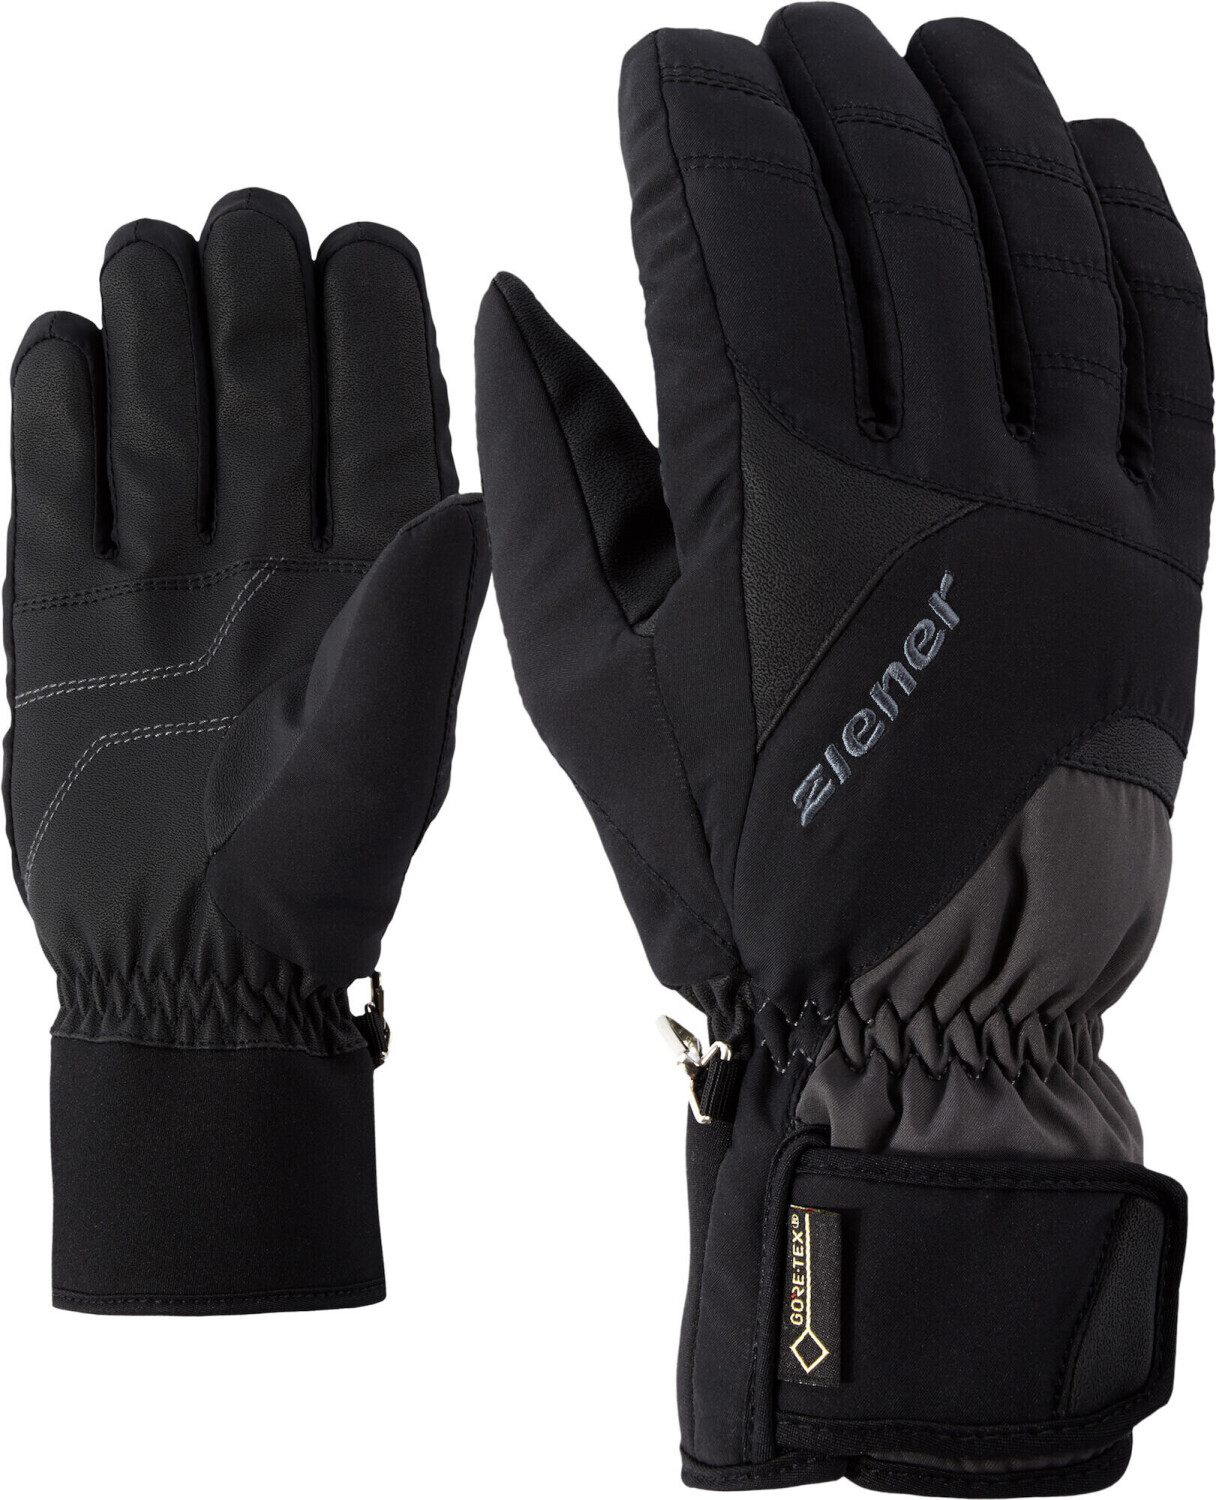 Ziener Guffert GTX Glove Ski bei graphite.black Preisvergleich Alpine ab 42,94 | €